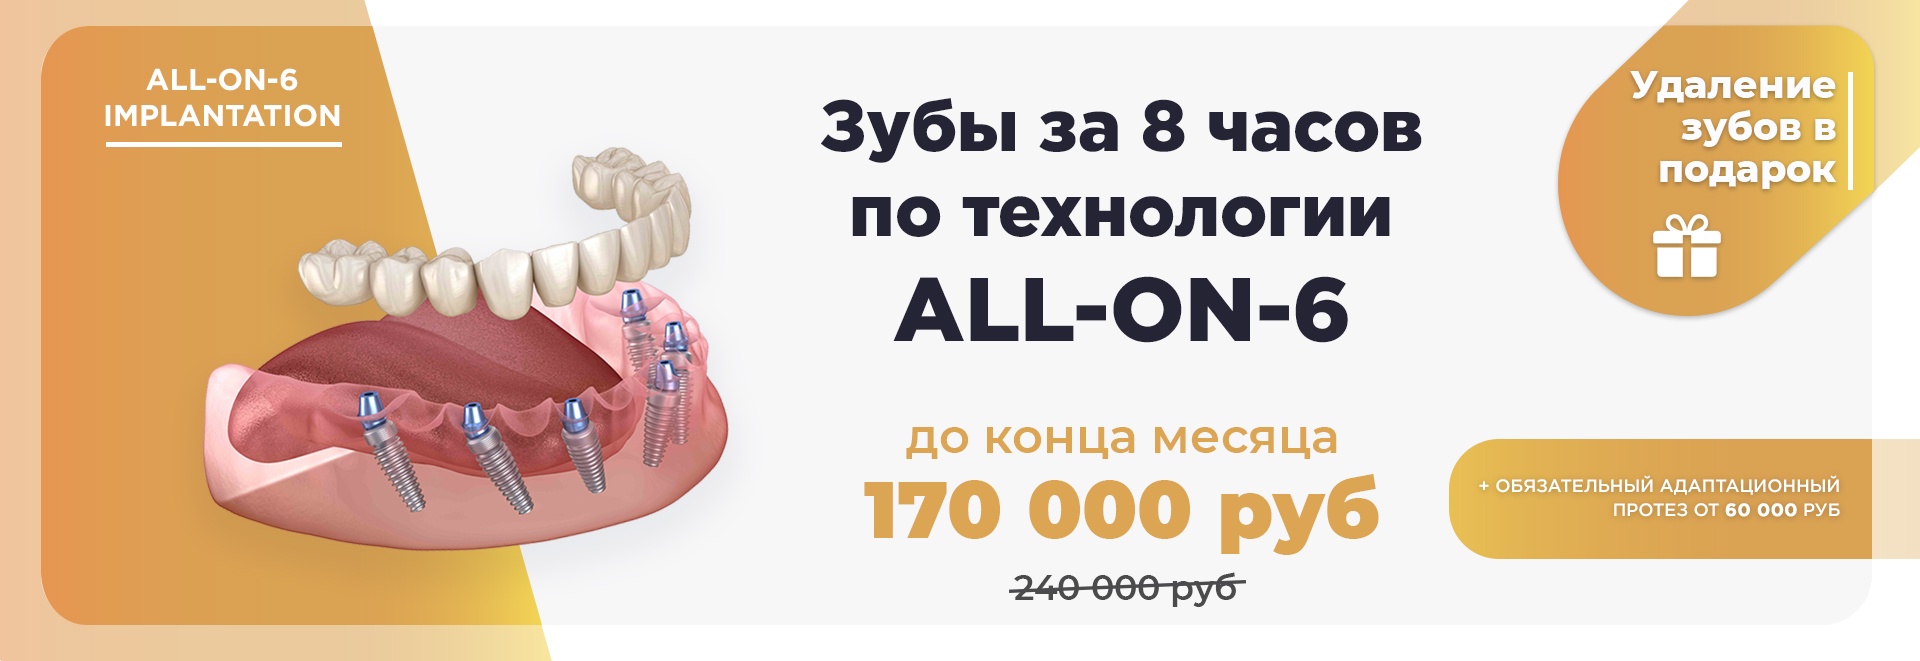 Зубы за 1 день по технологии all-on-6 - implantolog-fedorov.ru